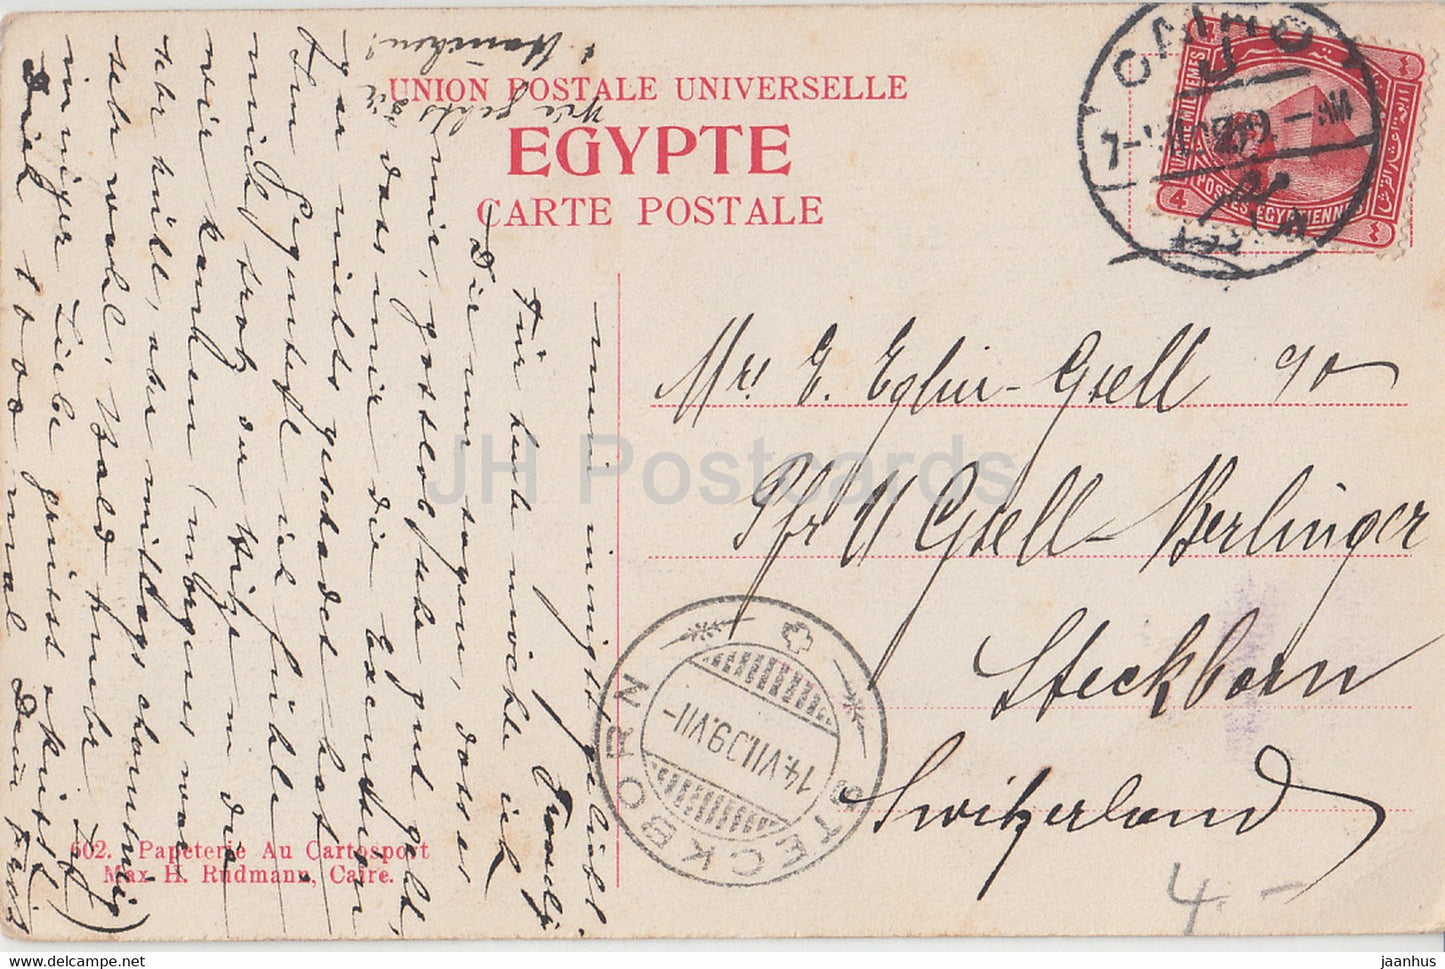 Cairo - Le Caire - Mosquee el Azhar - Vue Generale des Minarets - old postcard - 1909 - Egypt - used